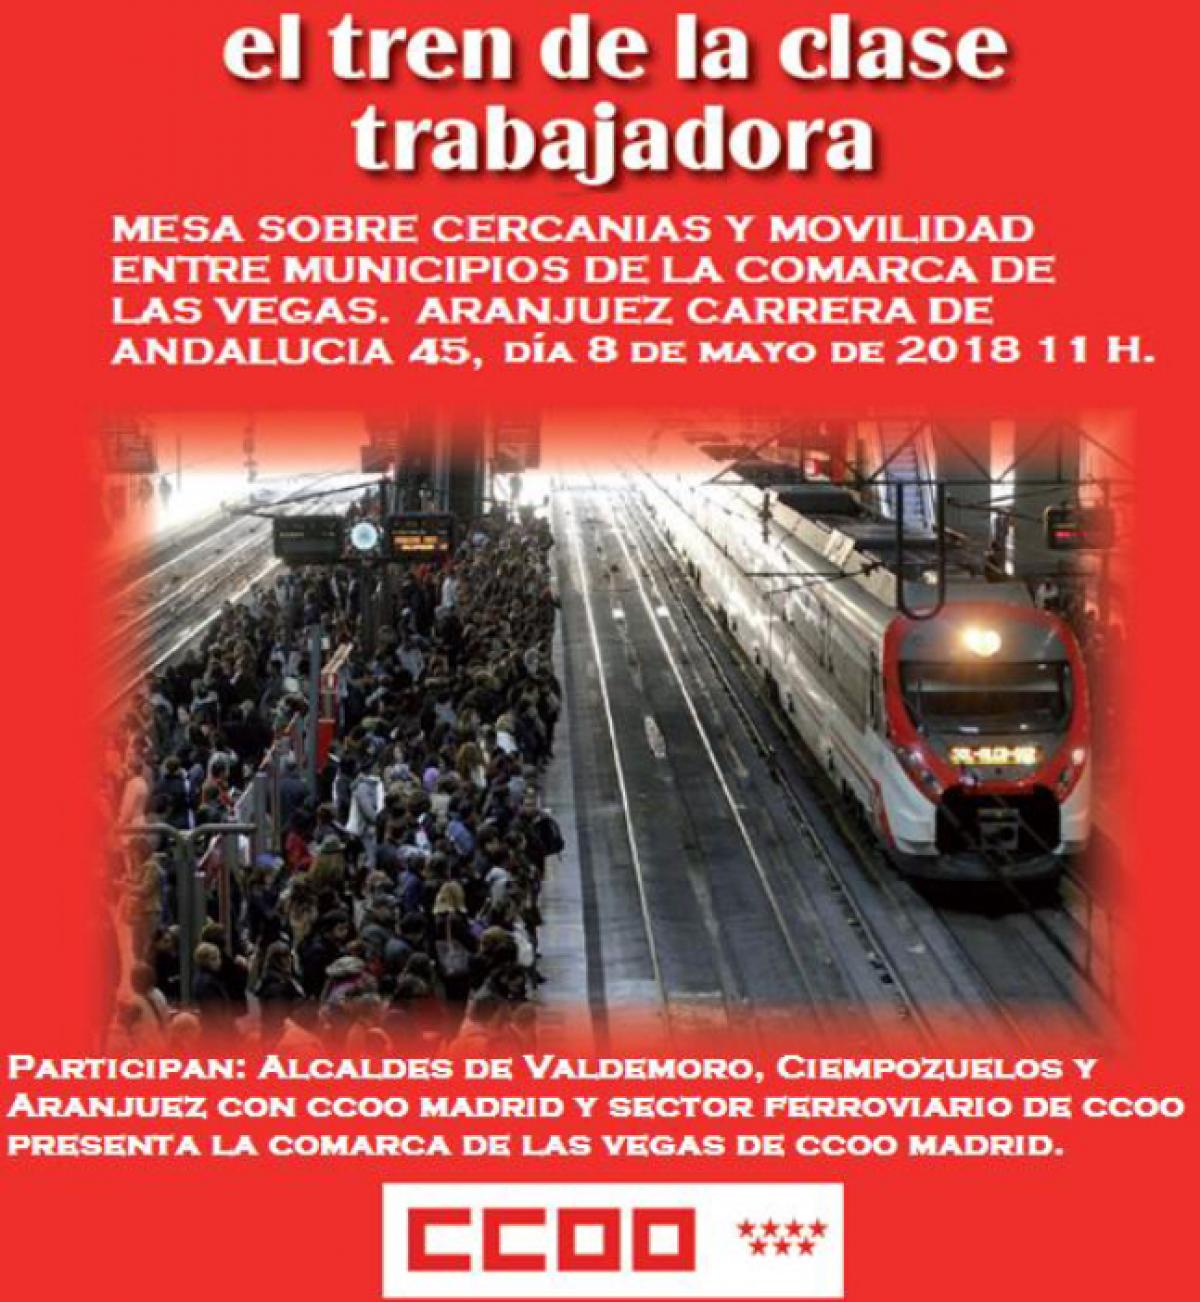 Jornadas "El tren de la clase trabajadora" en Aranjuez